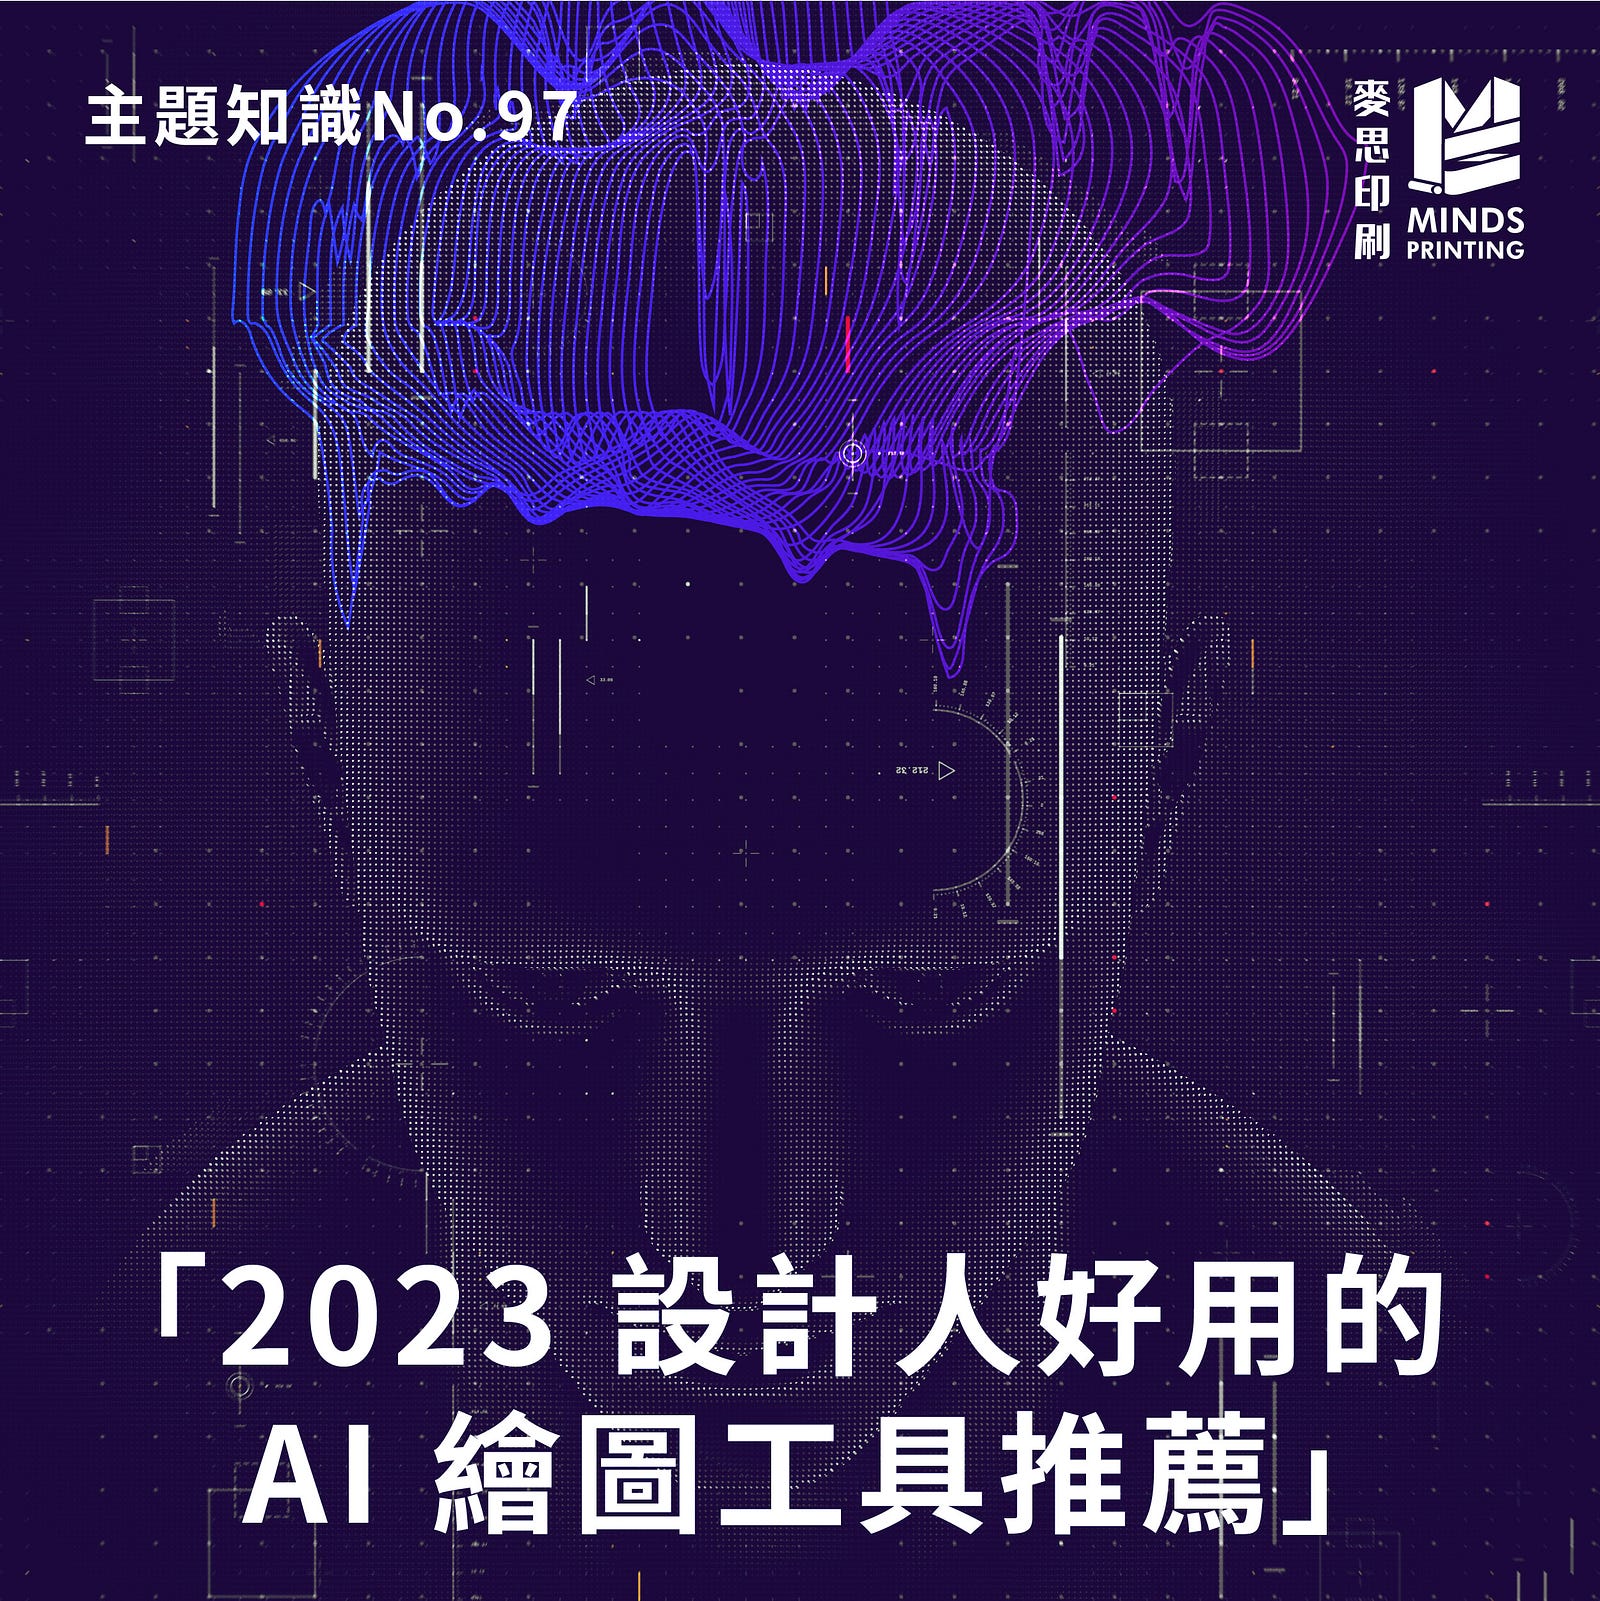 「2023 設計人好用的 AI 繪圖工具推薦」-Cover